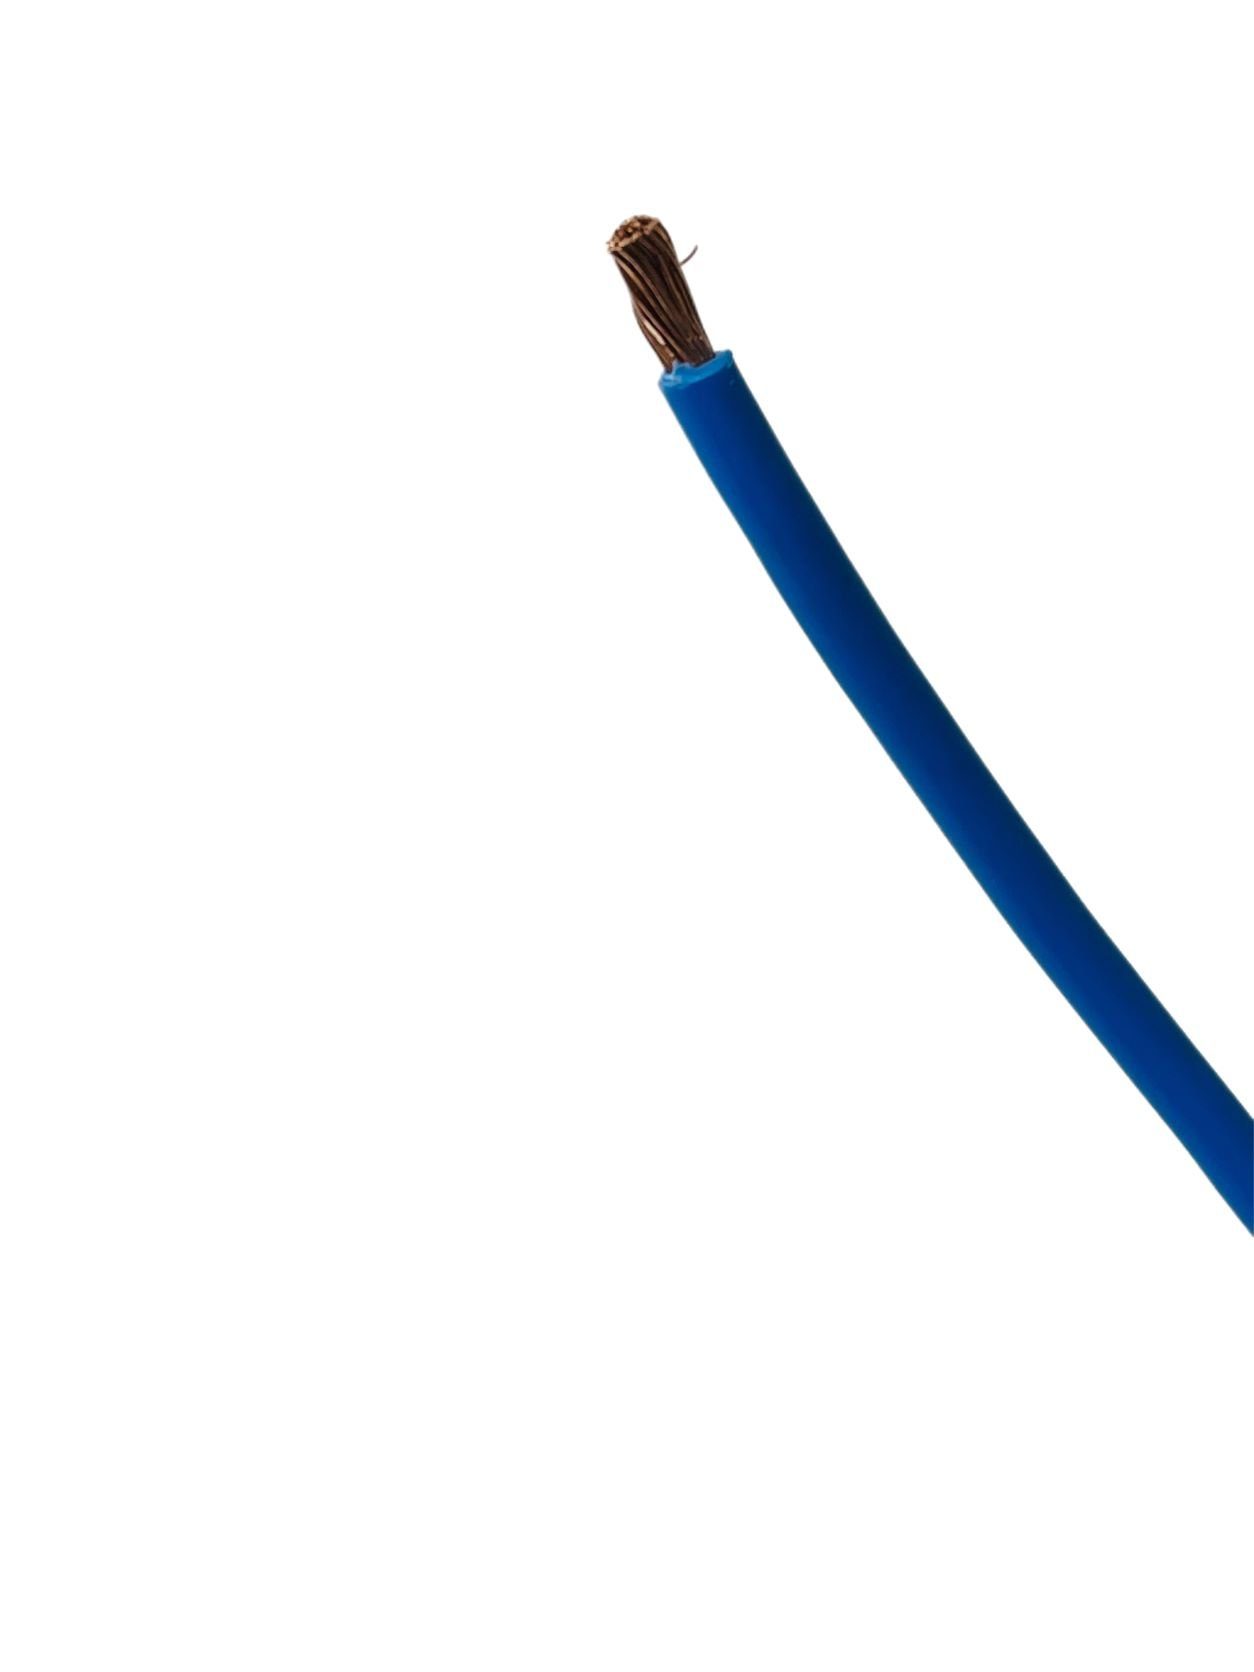 H07V-K blau Stromkabel, 10m Stromkabel H07V-K, mm² VaGo-Tools 16 Batteriekabel H07V-K